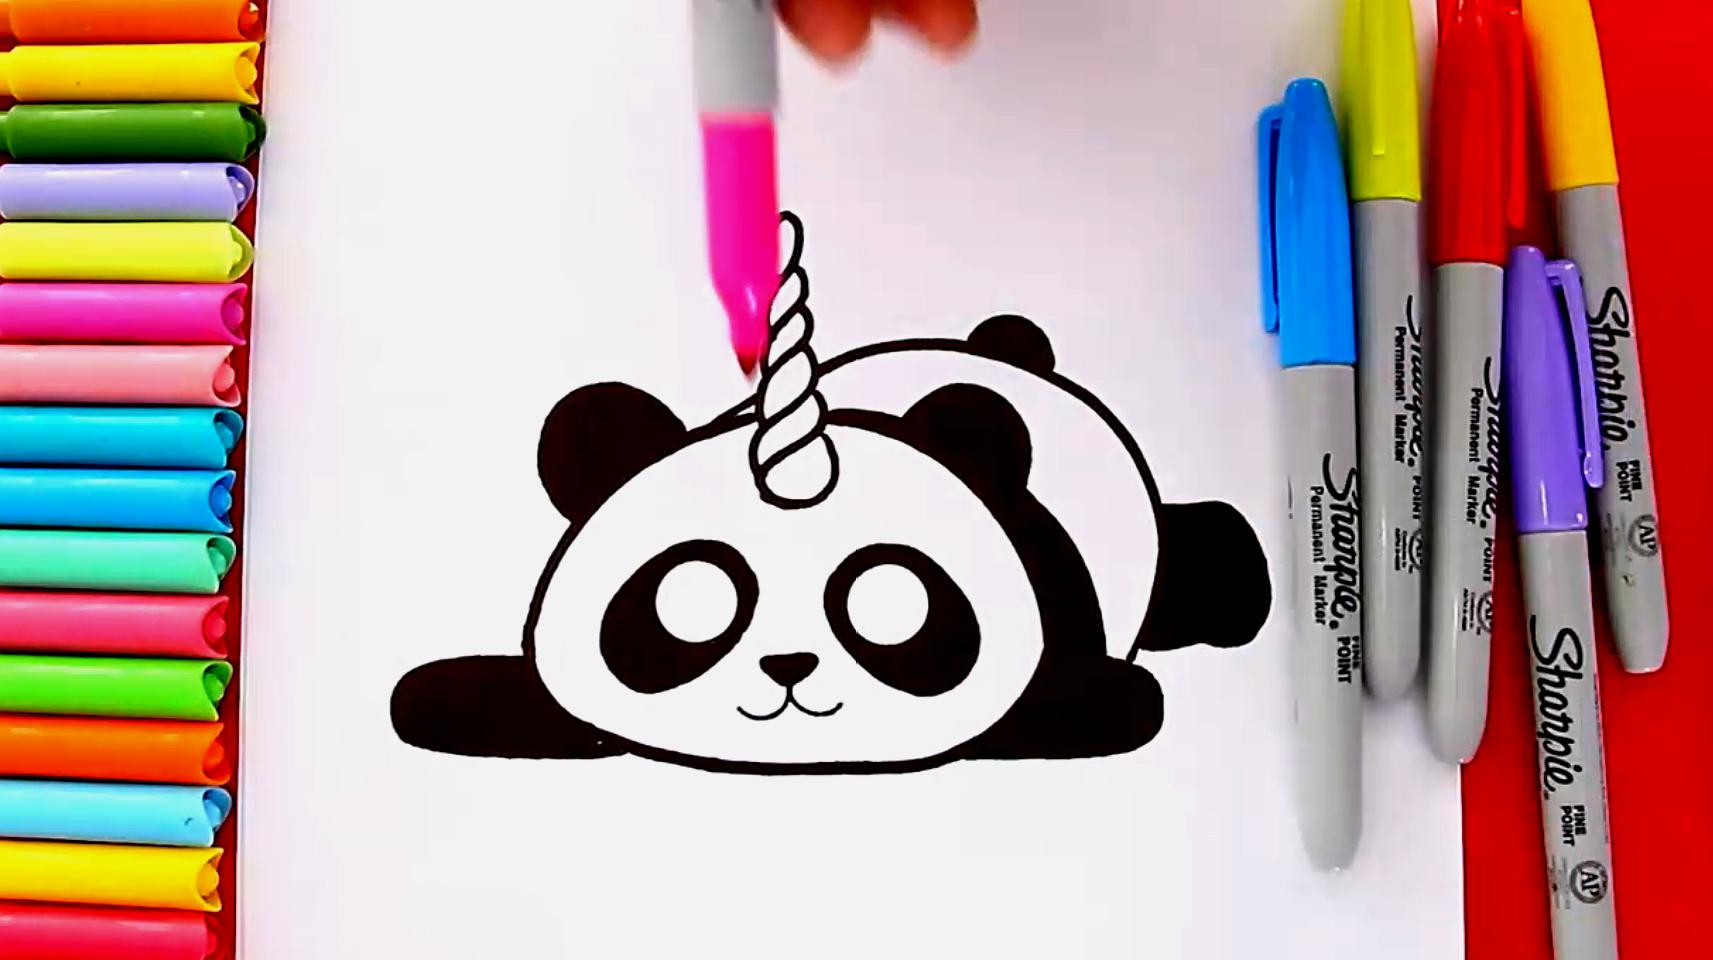 熊猫简笔画怎么画?